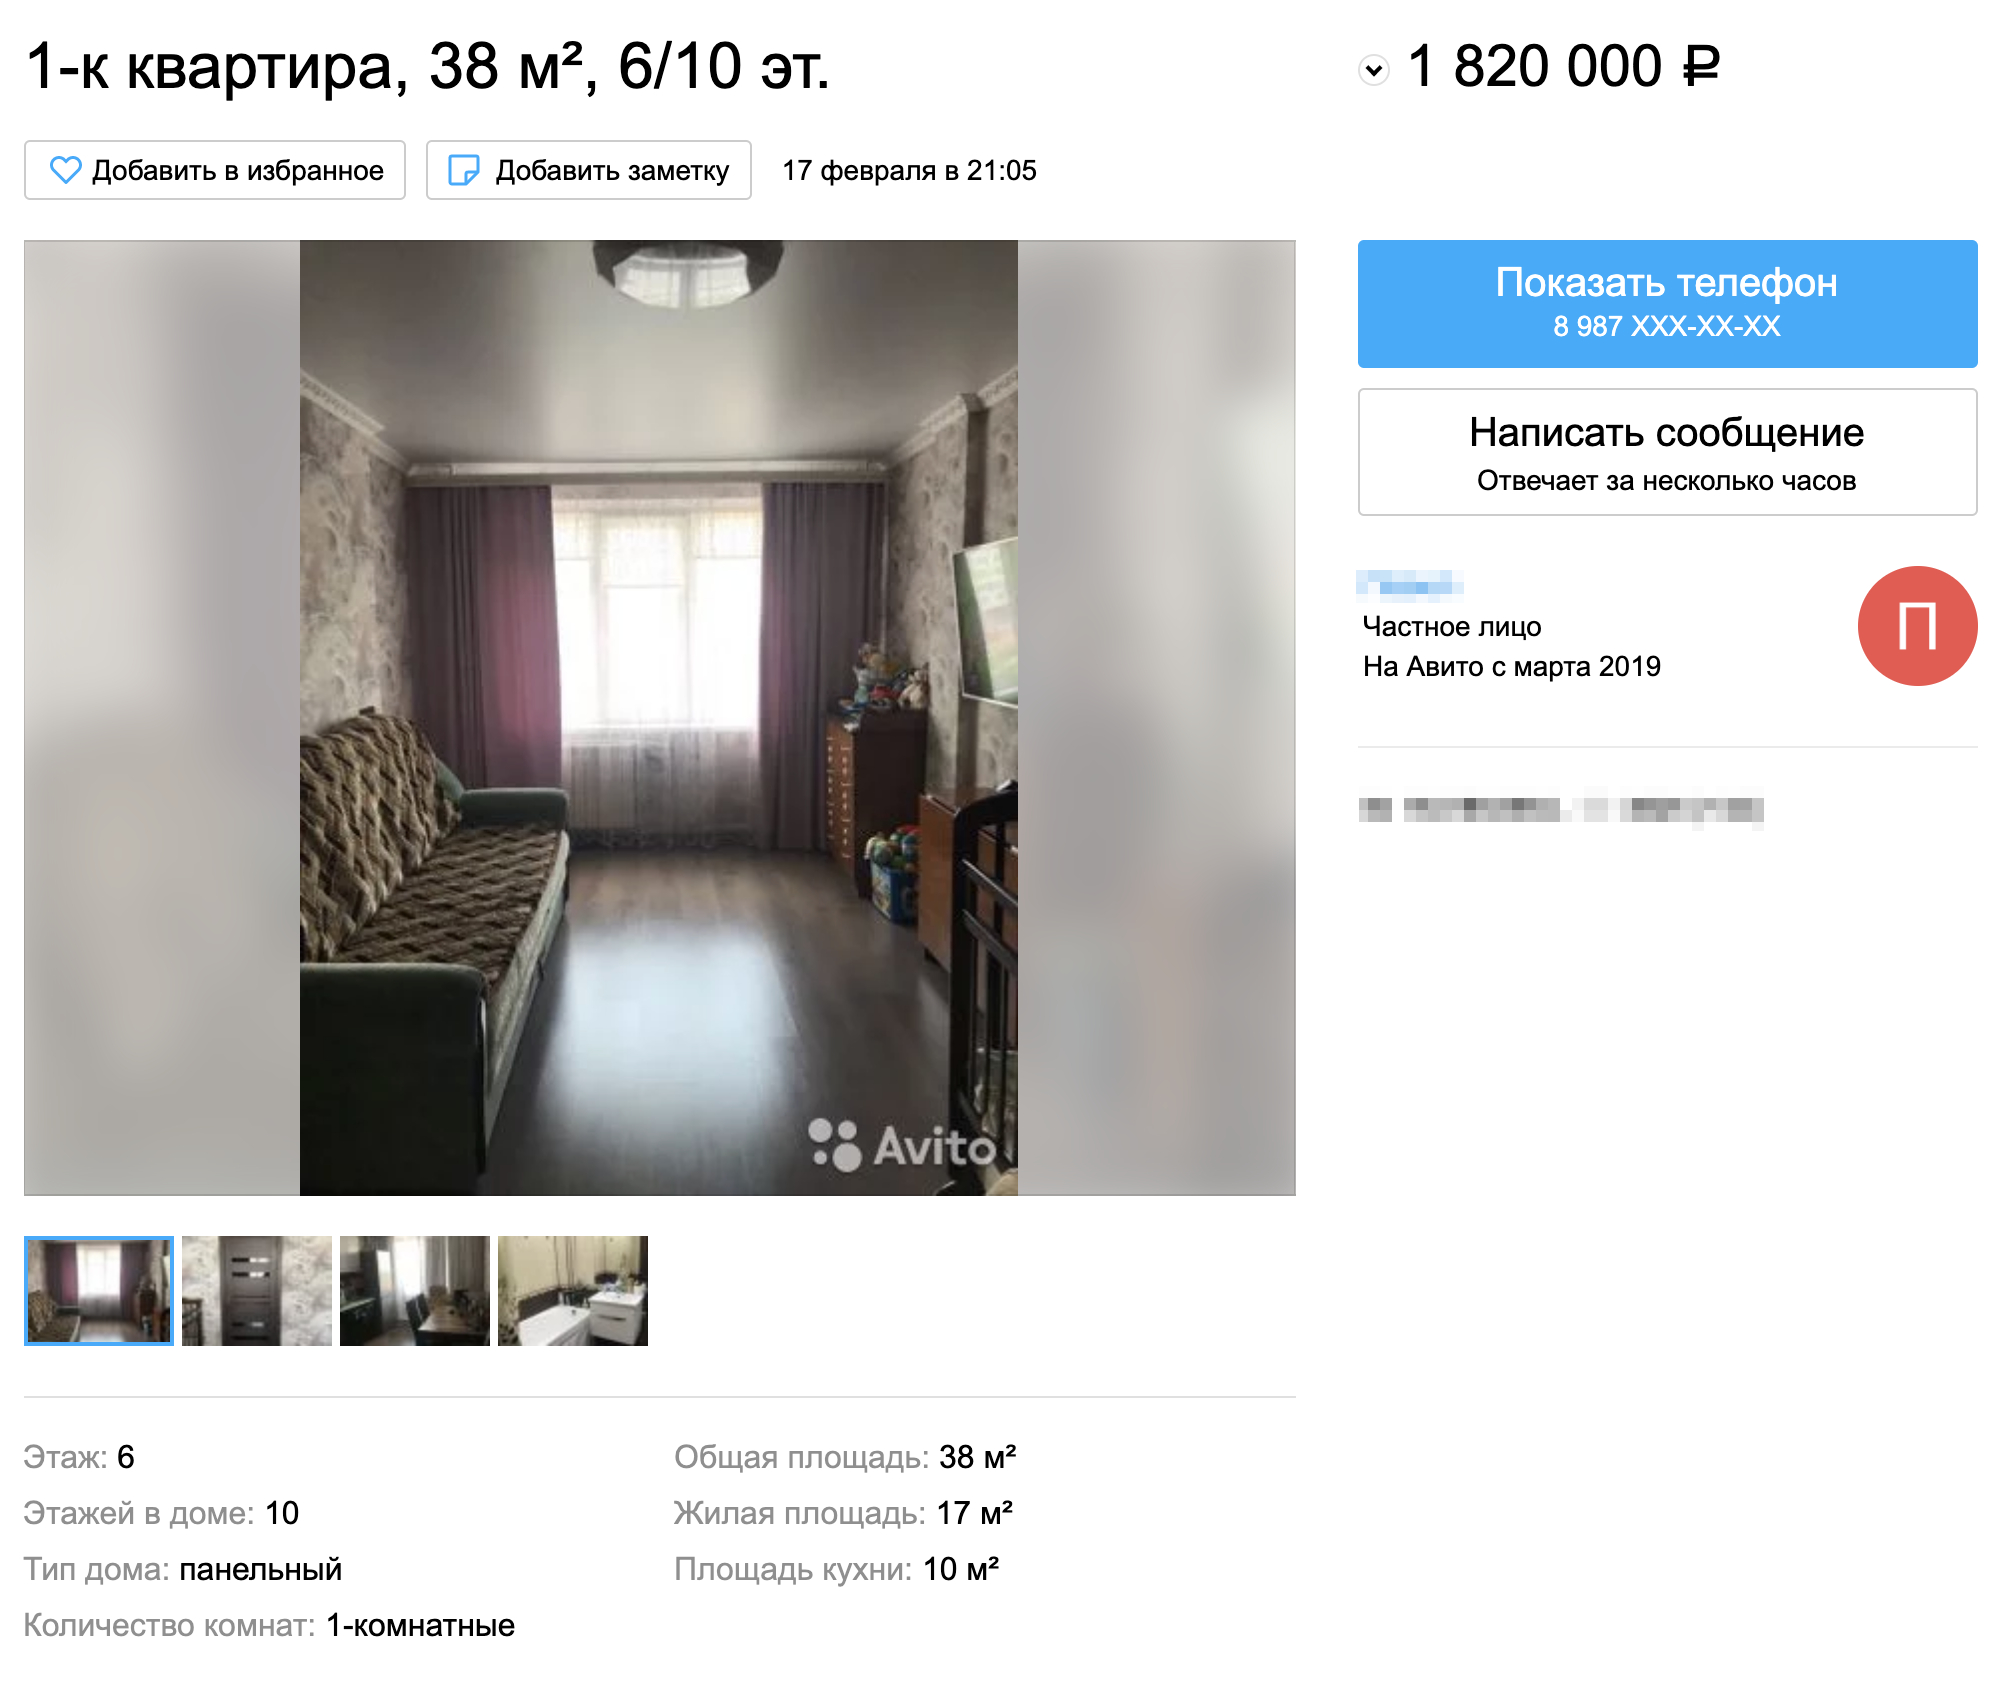 Квартира в одном из соседних домов с такой же планировкой, как у меня, стоит 1,8 млн рублей